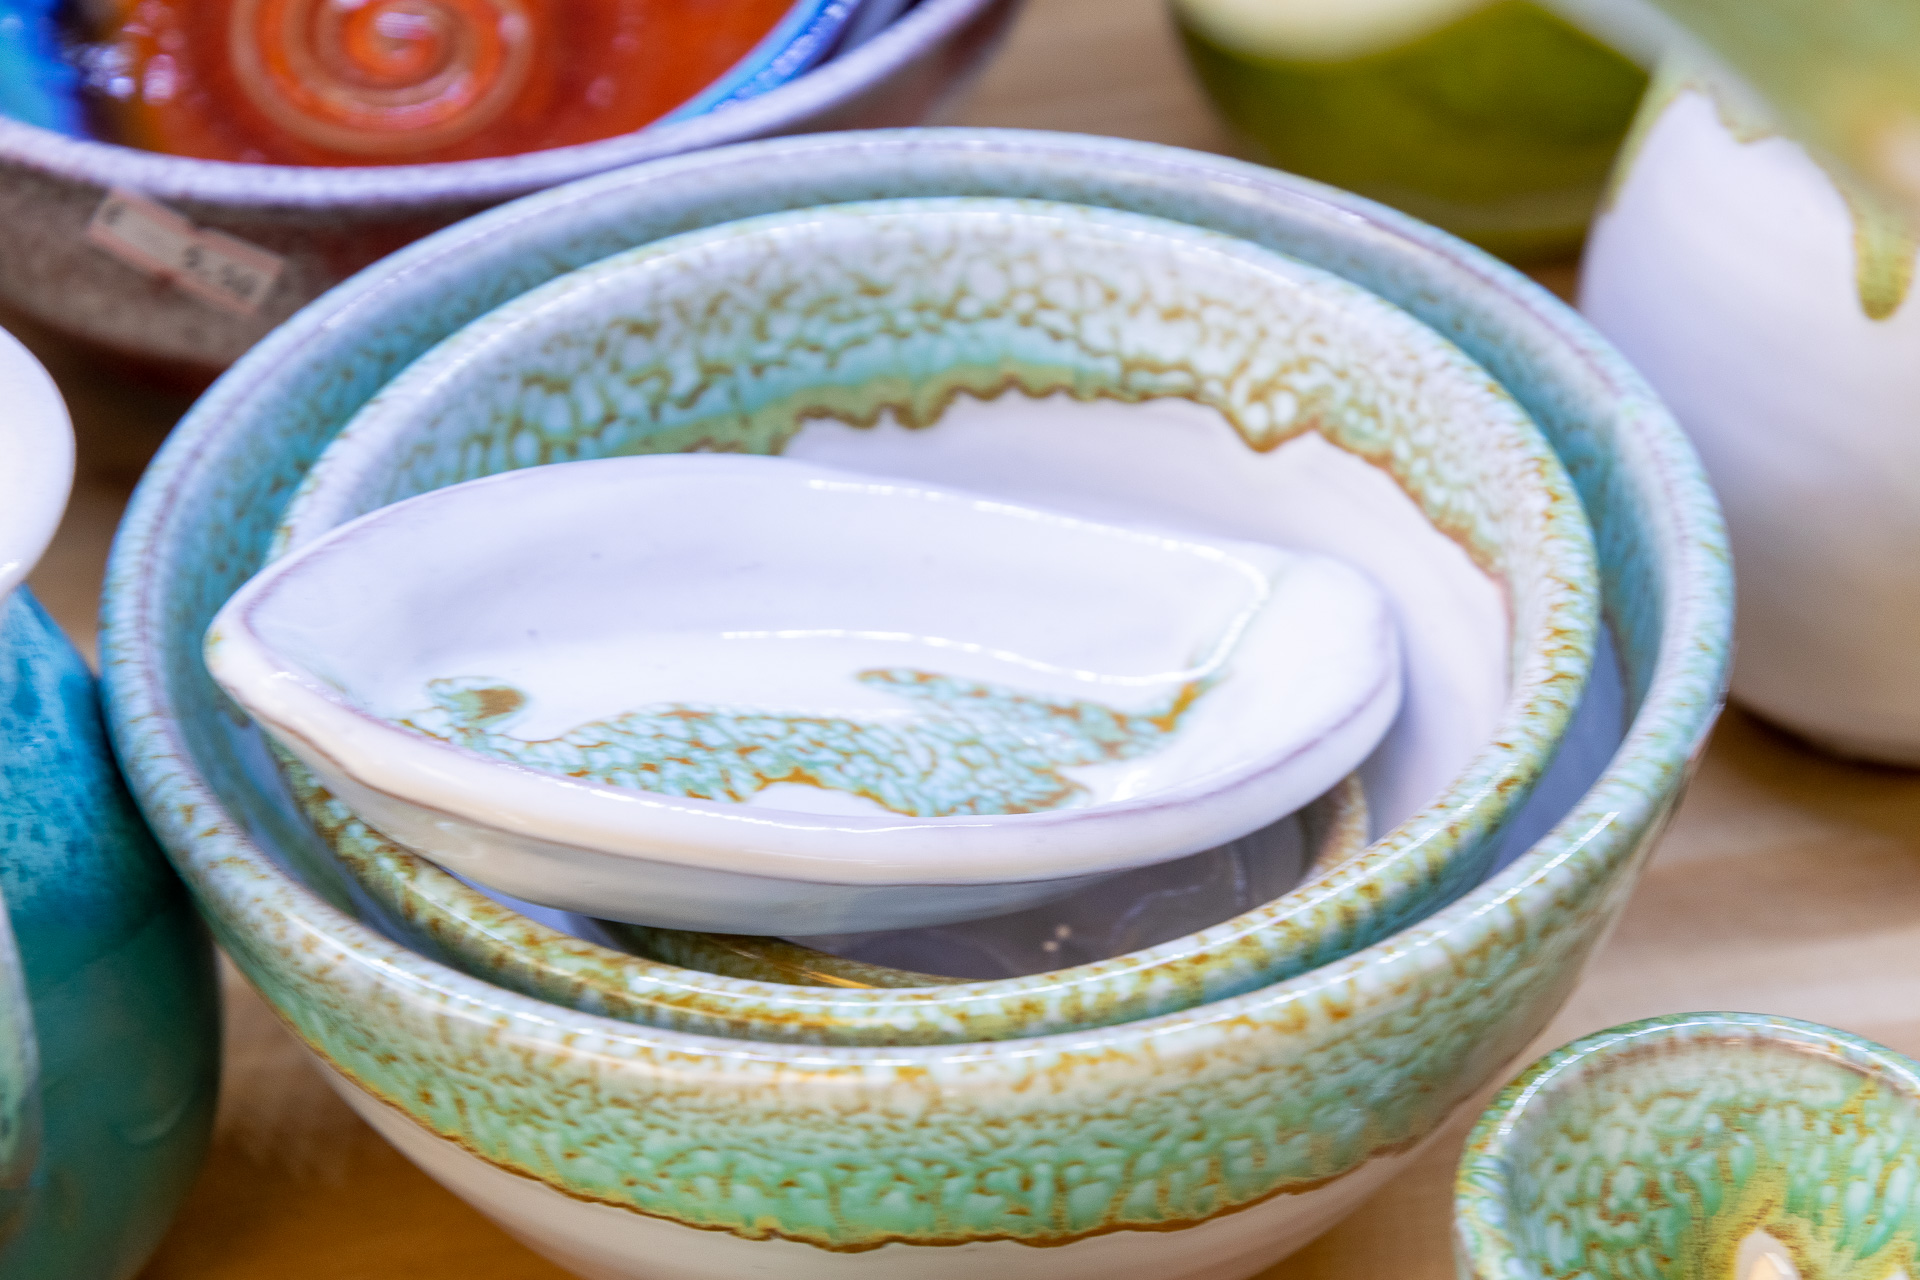 Serving items - Michael Laventzakis' Handmade Ceramics in Chania